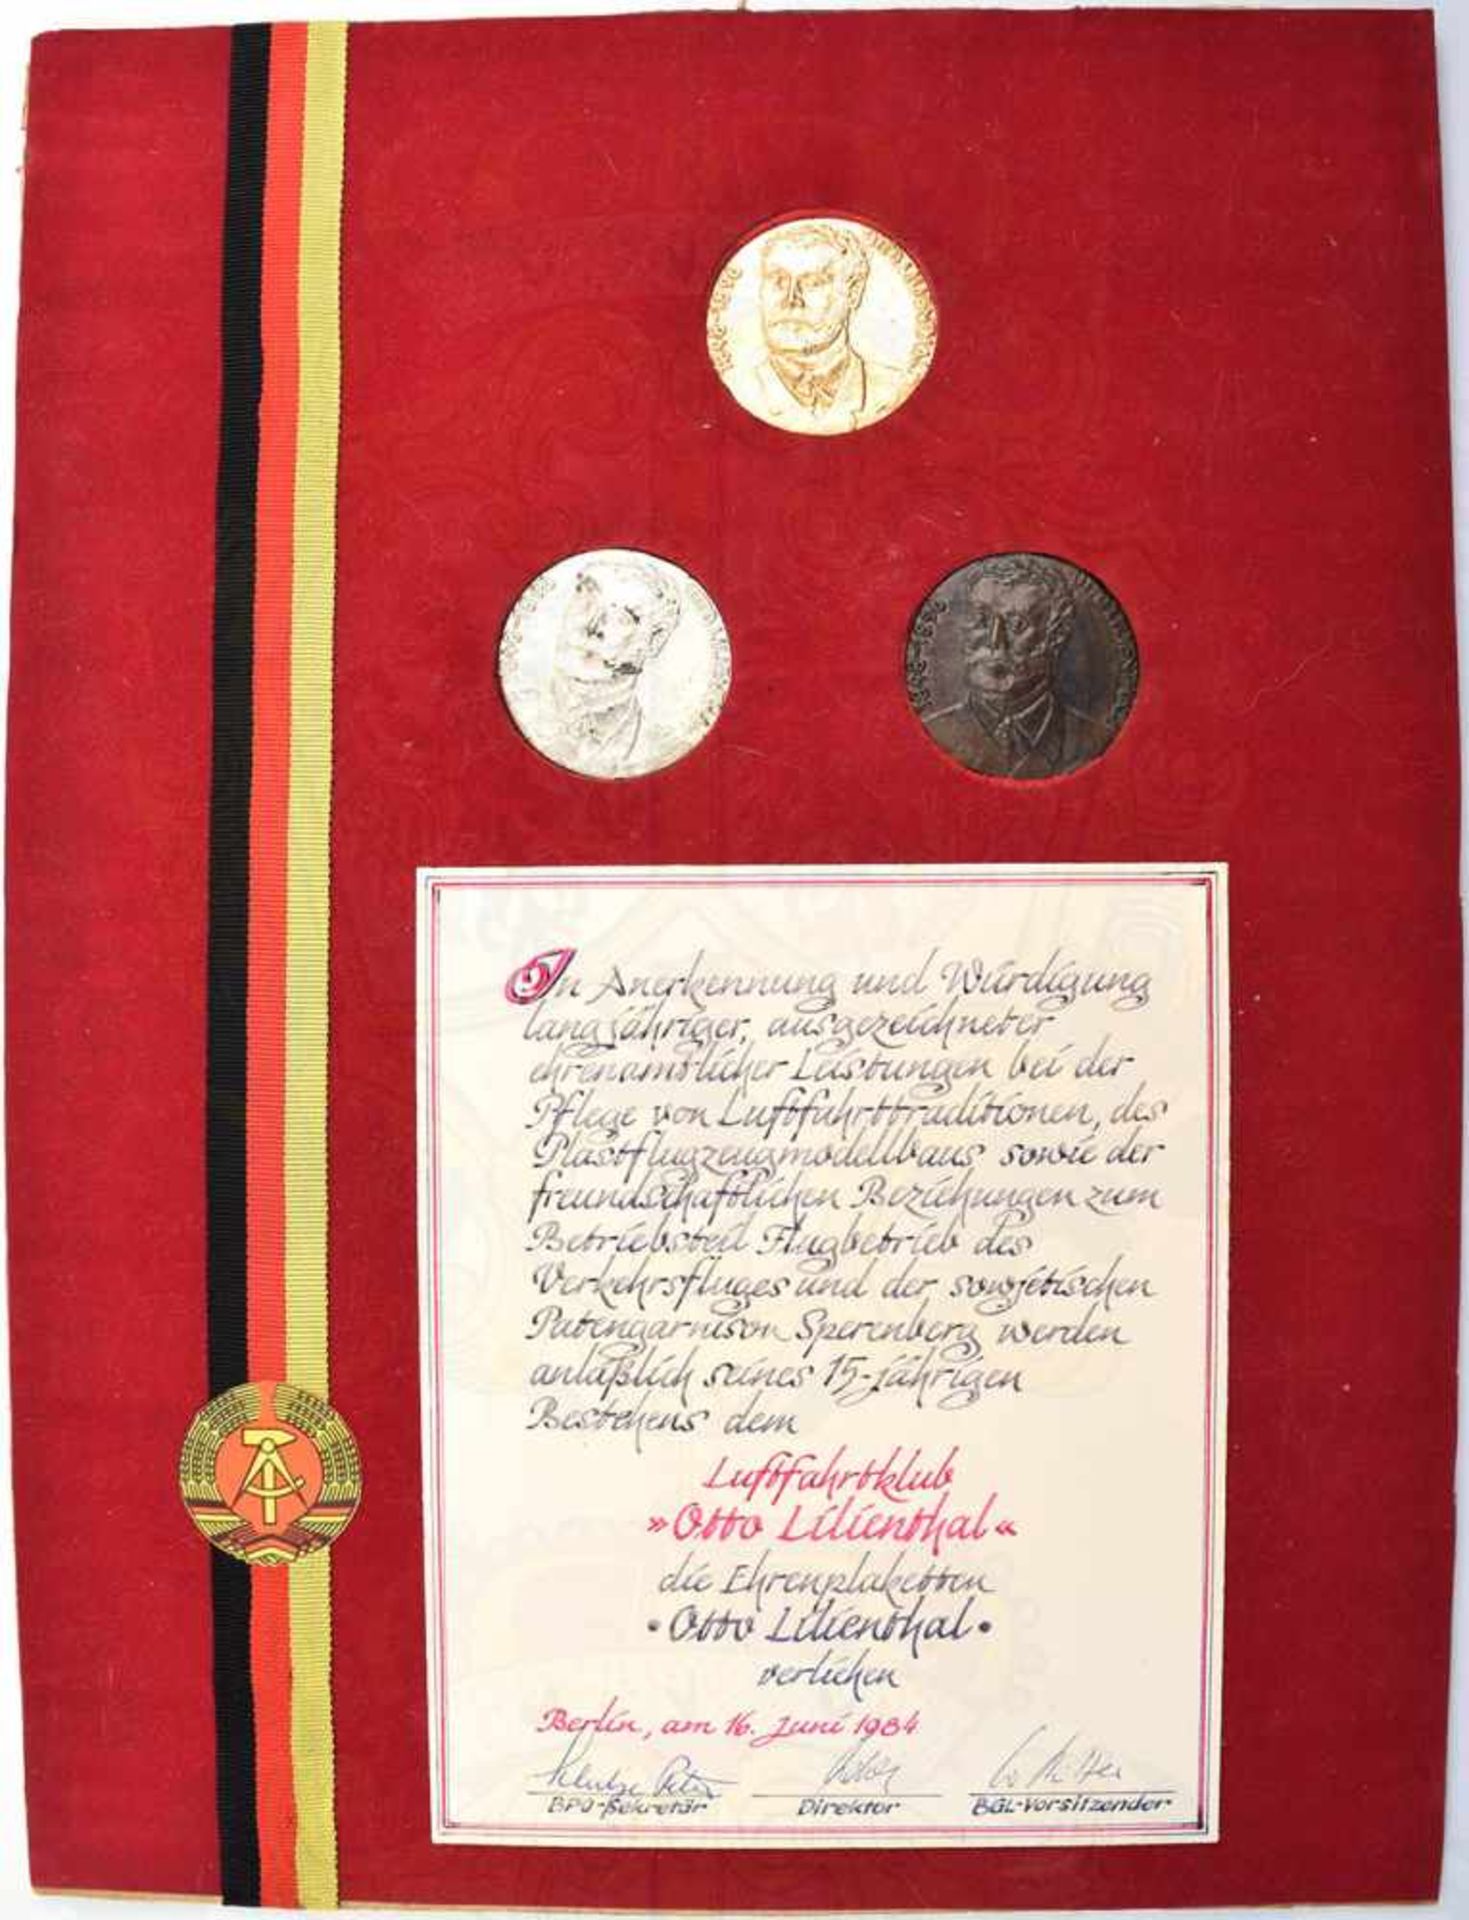 SATZ EHRENPLAKETTEN OTTO LILIENTHAL, Gold/Silber/Bronze, verliehen für ehrenamtl. Leistungen zum